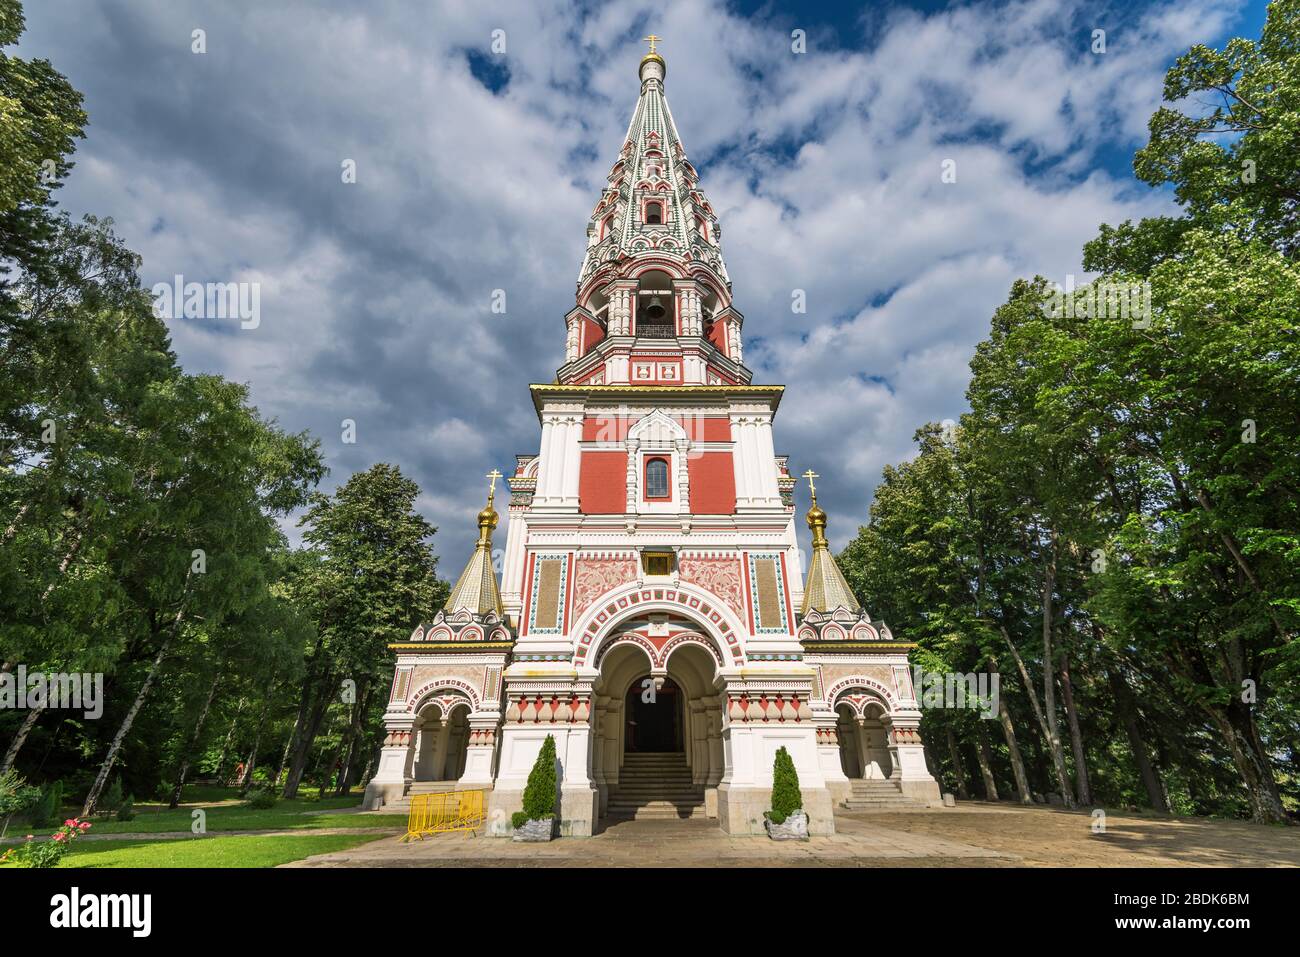 Russian church (Monastery Nativity) in town of Shipka, Stara Zagora Region, Bulgaria. Stock Photo